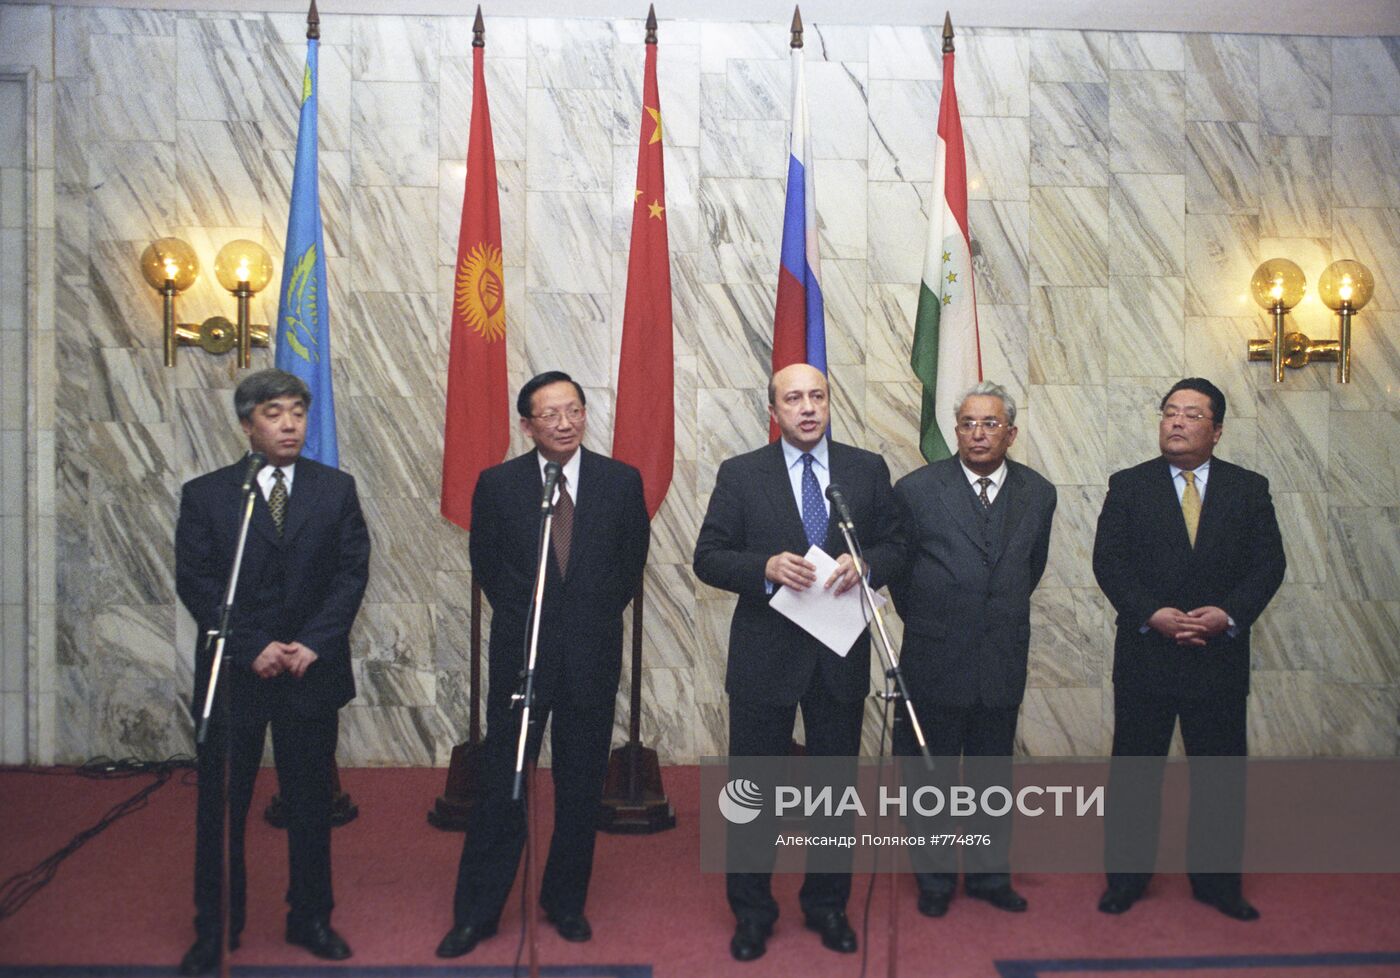 Встреча министров иностранных дел стран "Шанхайской пятерки"